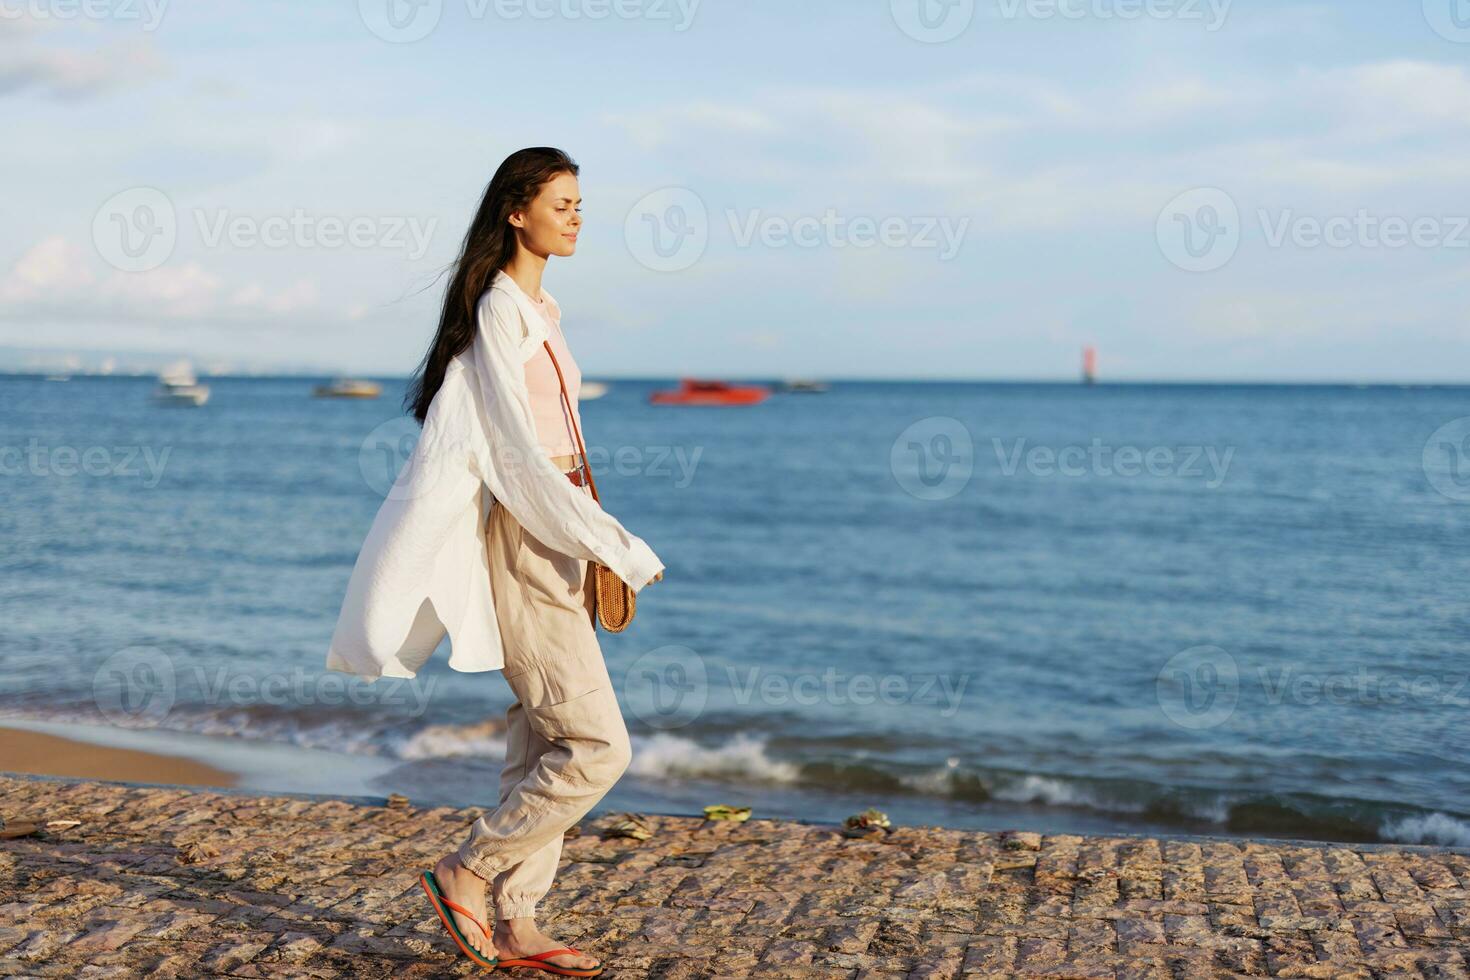 een vrouw gelukkig in de zon wandelen Aan de strand met haar armen verspreiding uit tegen de backdrop van de oceaan glimlach, vliegend haar, gebruind huid, ontspanning, reis naar de oceaan en vrijheid, zonsondergang licht Bali. foto